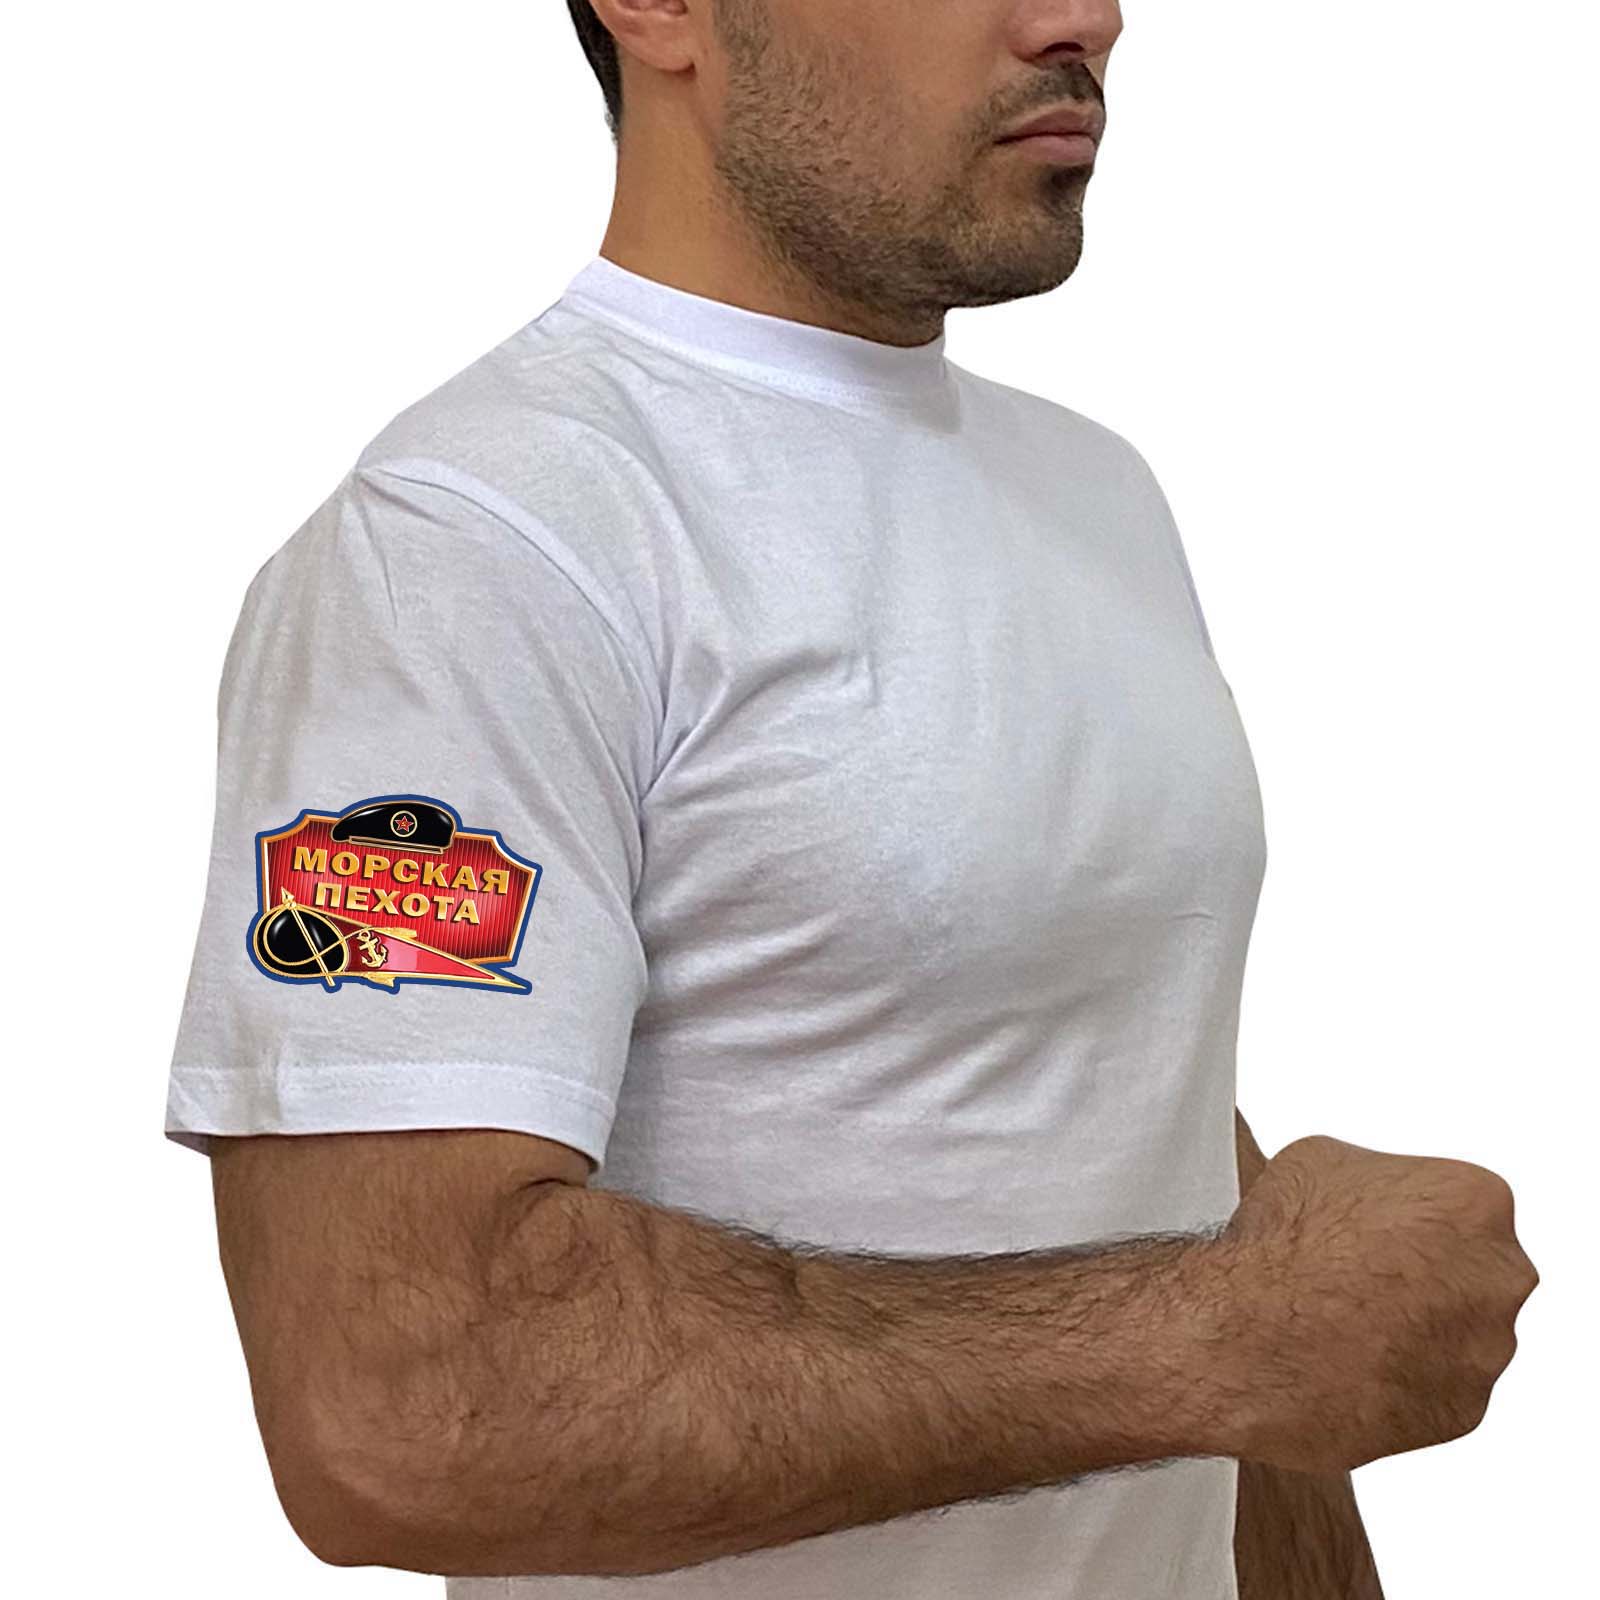 Белая футболка с термотрансфером "Морская пехота" на рукаве